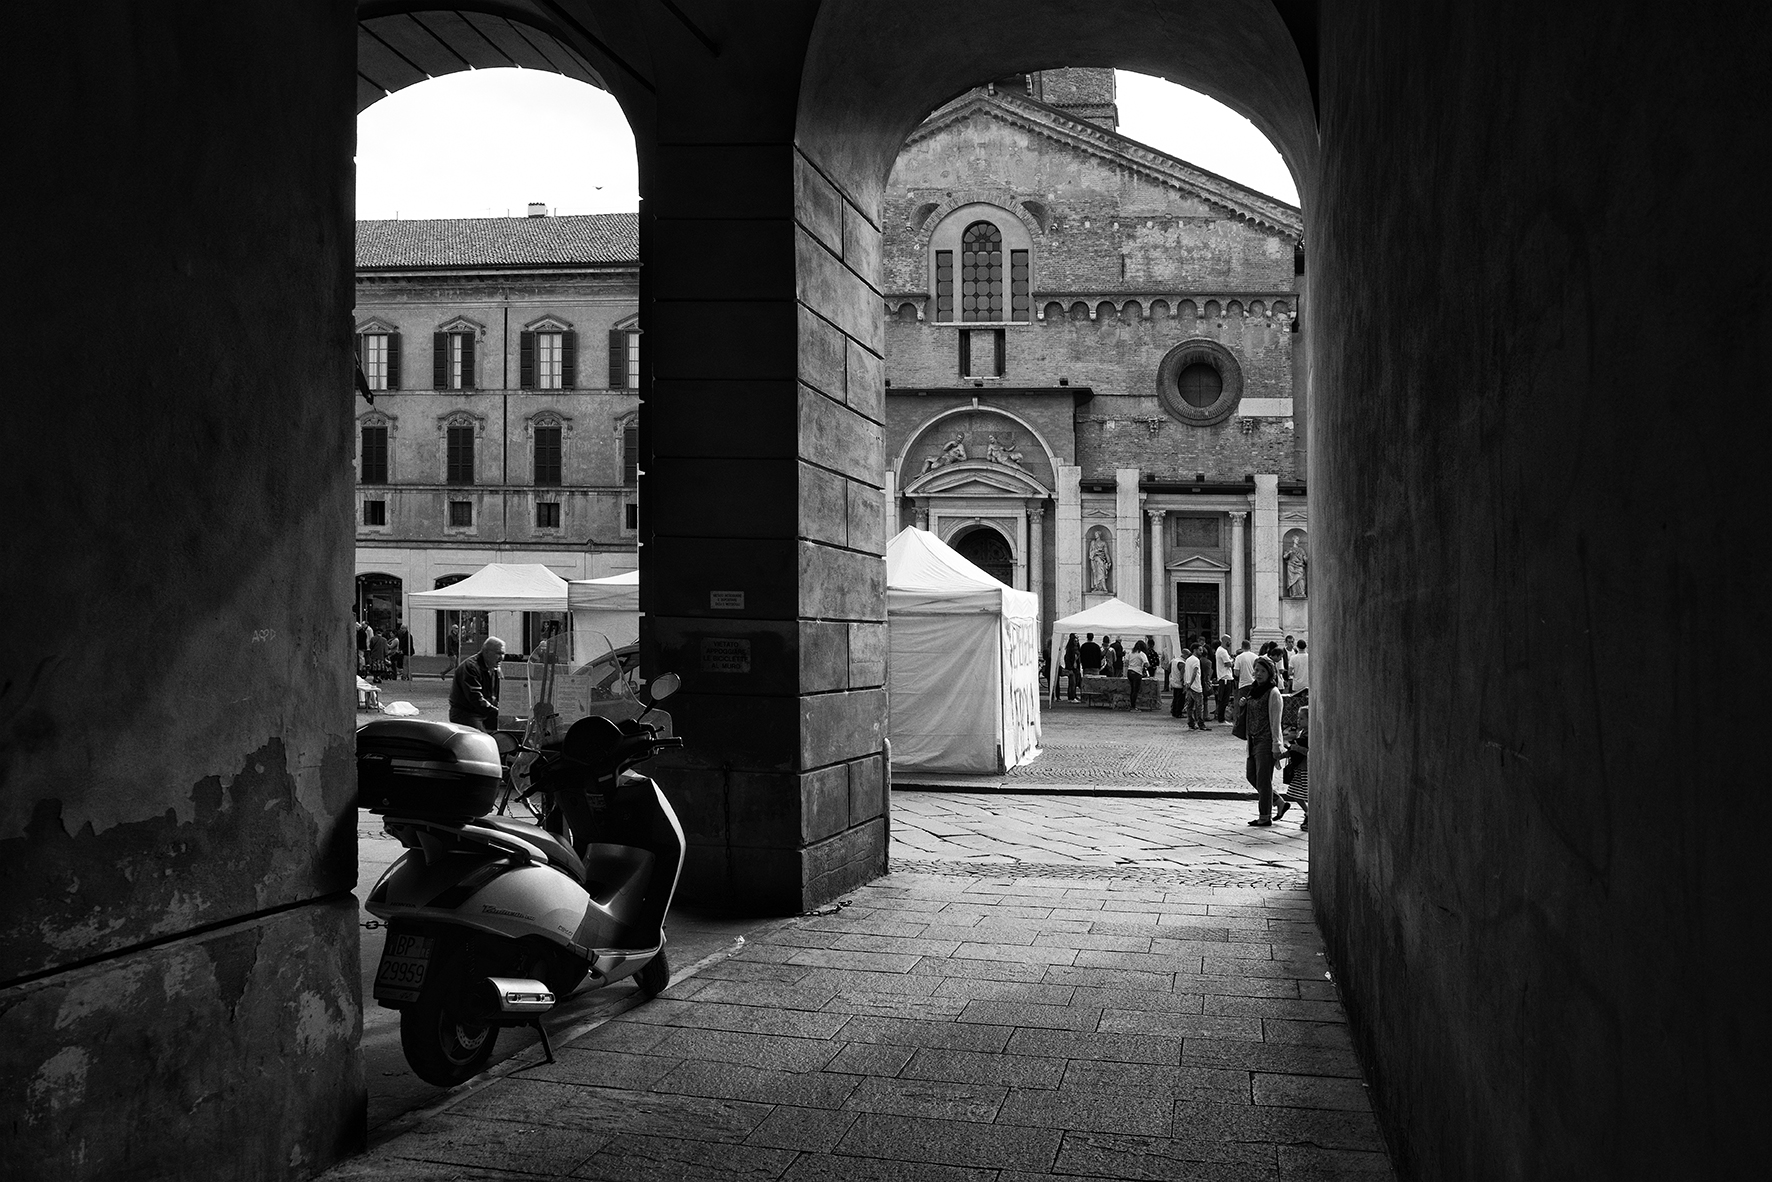 foto: https://upload.wikimedia.org/wikipedia/commons/c/cb/Duomo_di_Reggio_Emilia%2C_vista_frontale.jpg